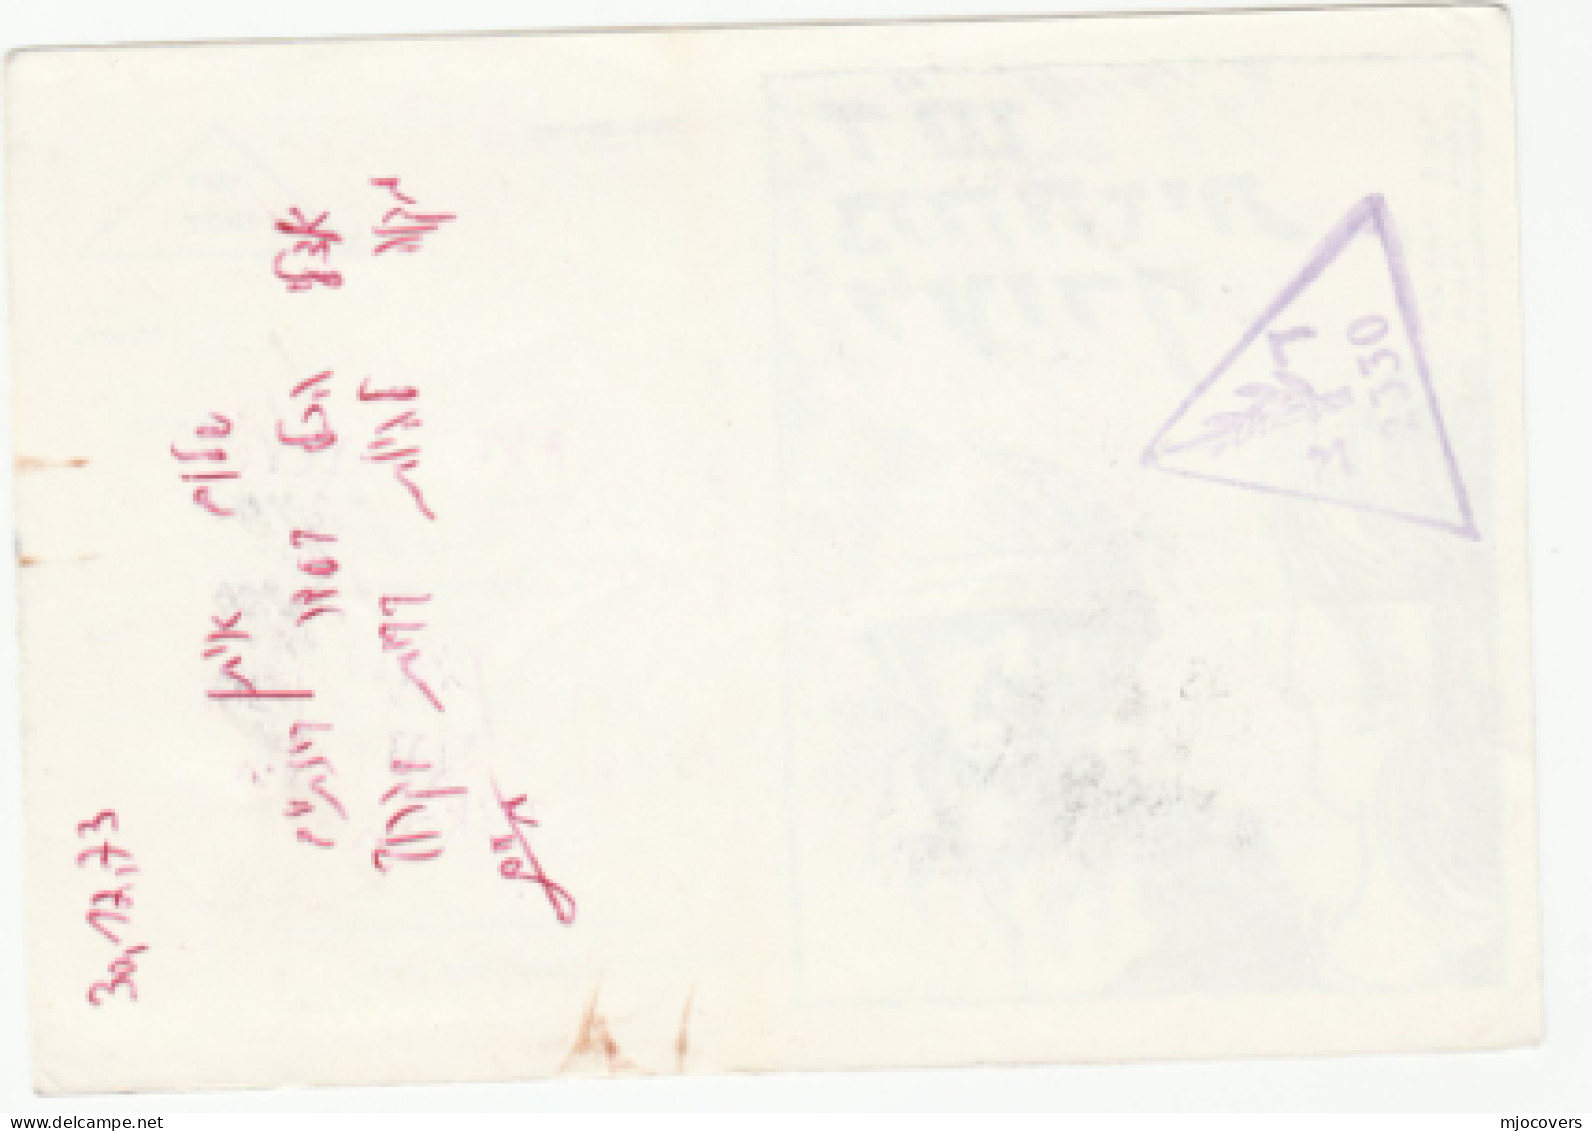 1973 ISRAEL Unit 2330 Illus MILITARY SERVICE CARD  Forces Mail Cover Zahal Postcard - Brieven En Documenten